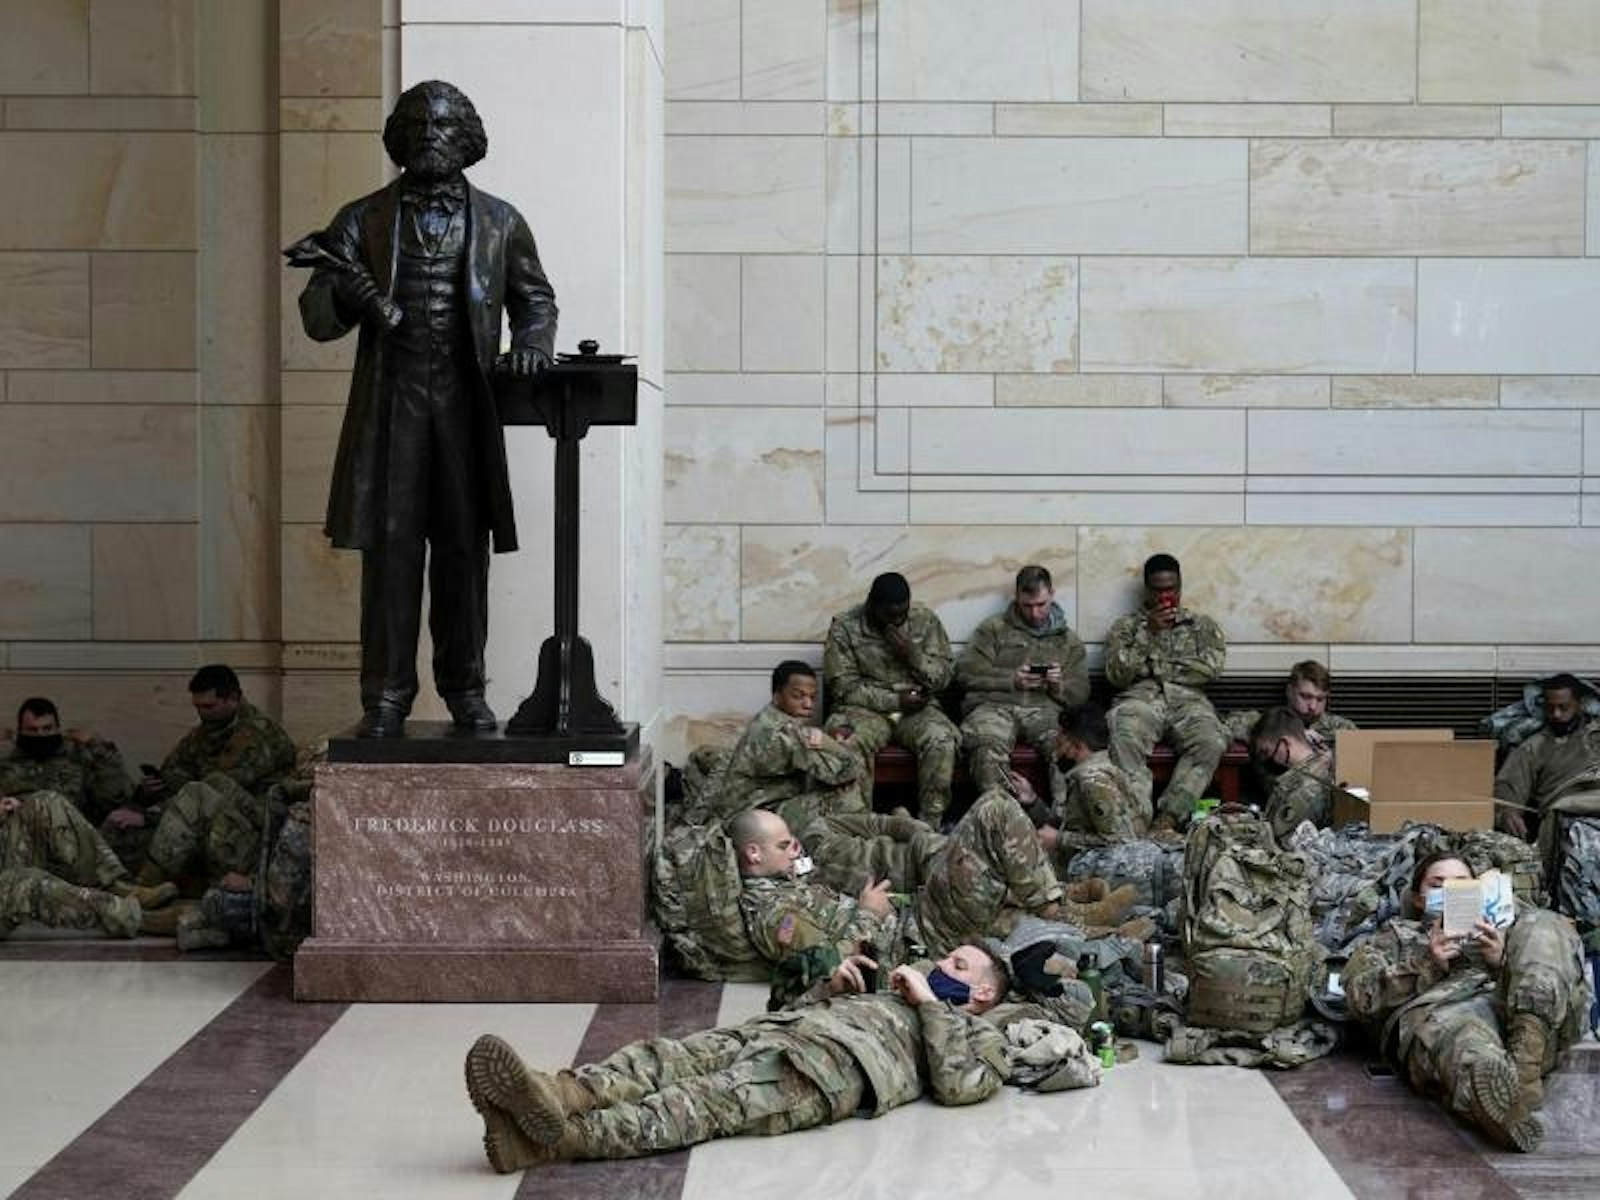 Soldaten im Besucherzentrum des US-Kapitol neben dem Denkmal von Frederick Douglass.